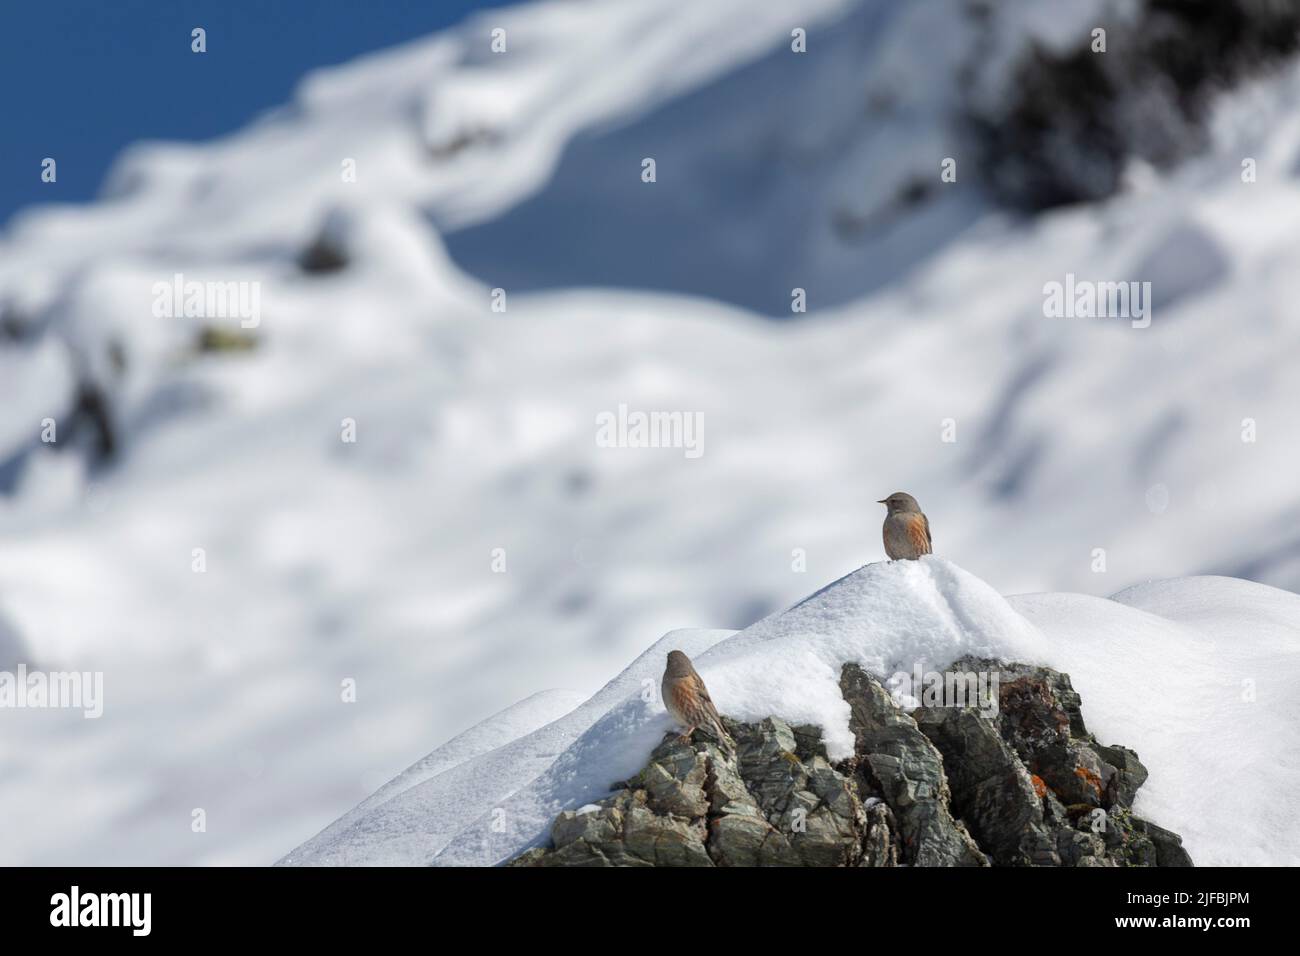 France, Isère, massif de Belledonne, acenter alpin (Prunella collaris) Banque D'Images